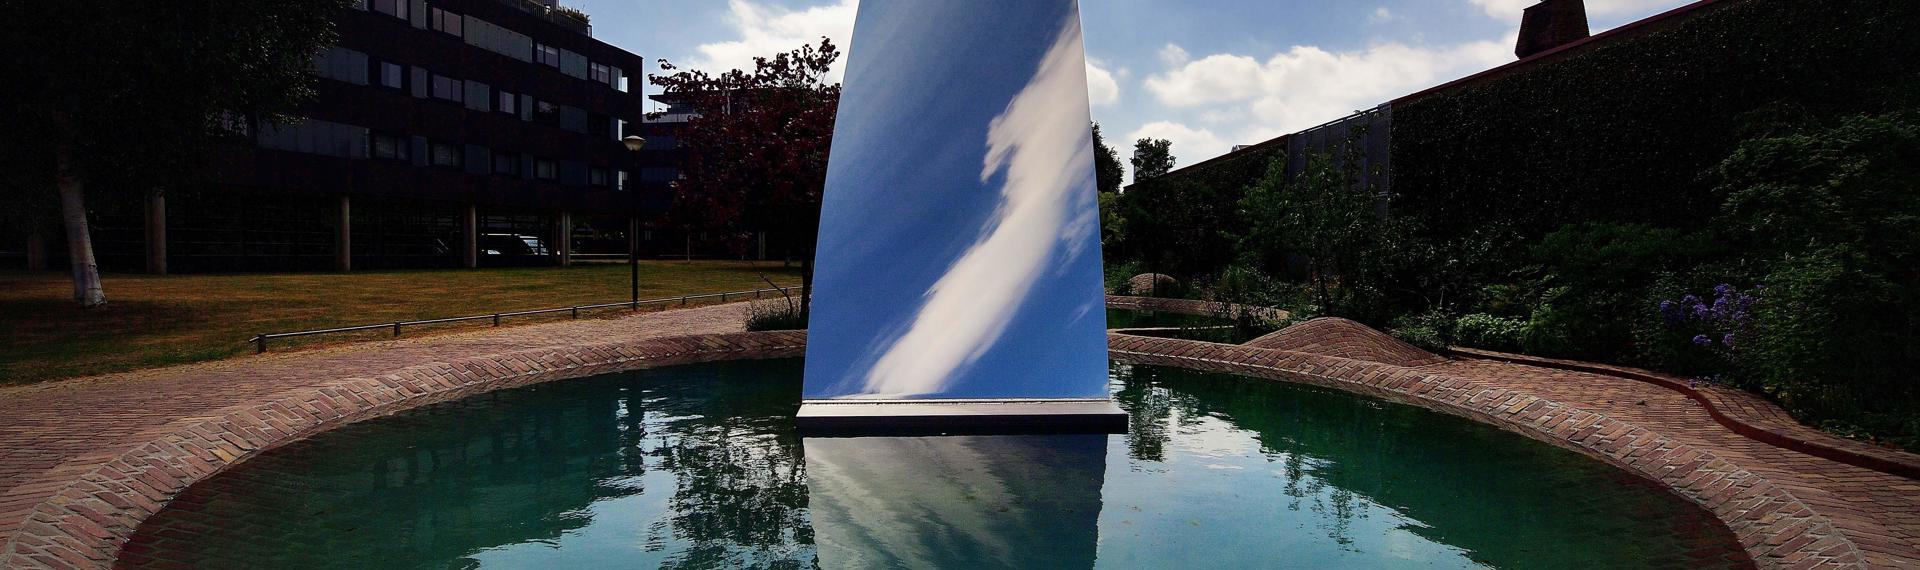 Tilburg ist die erste Stadt mit einer Skulptur (Sky Mirror for Hendrik)von Anish Kapoor im öffentlichen Raum